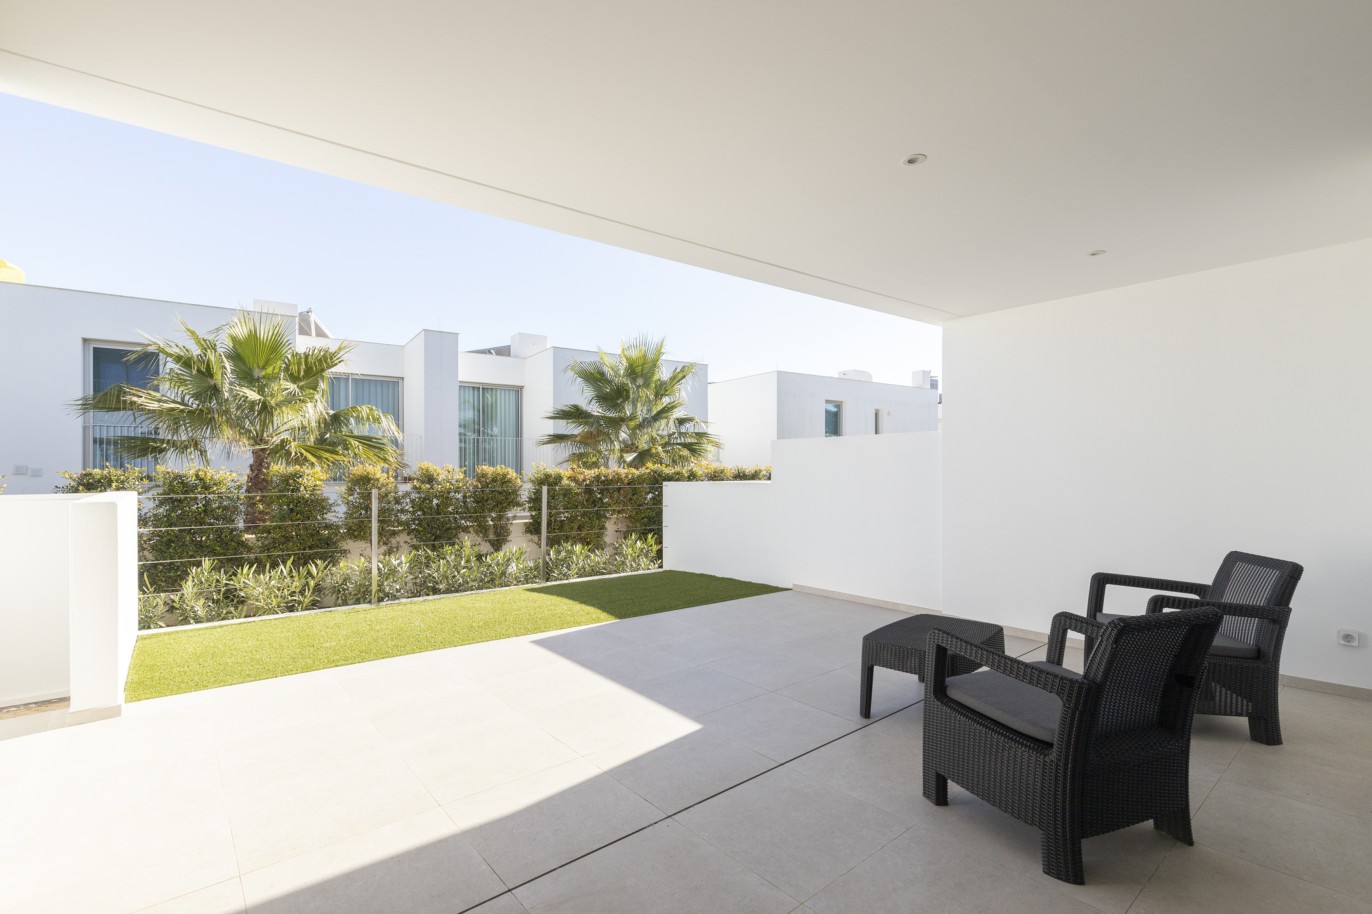 3 bedroom townhouse in private condominium, for sale, in Lagos, Algarve_217638